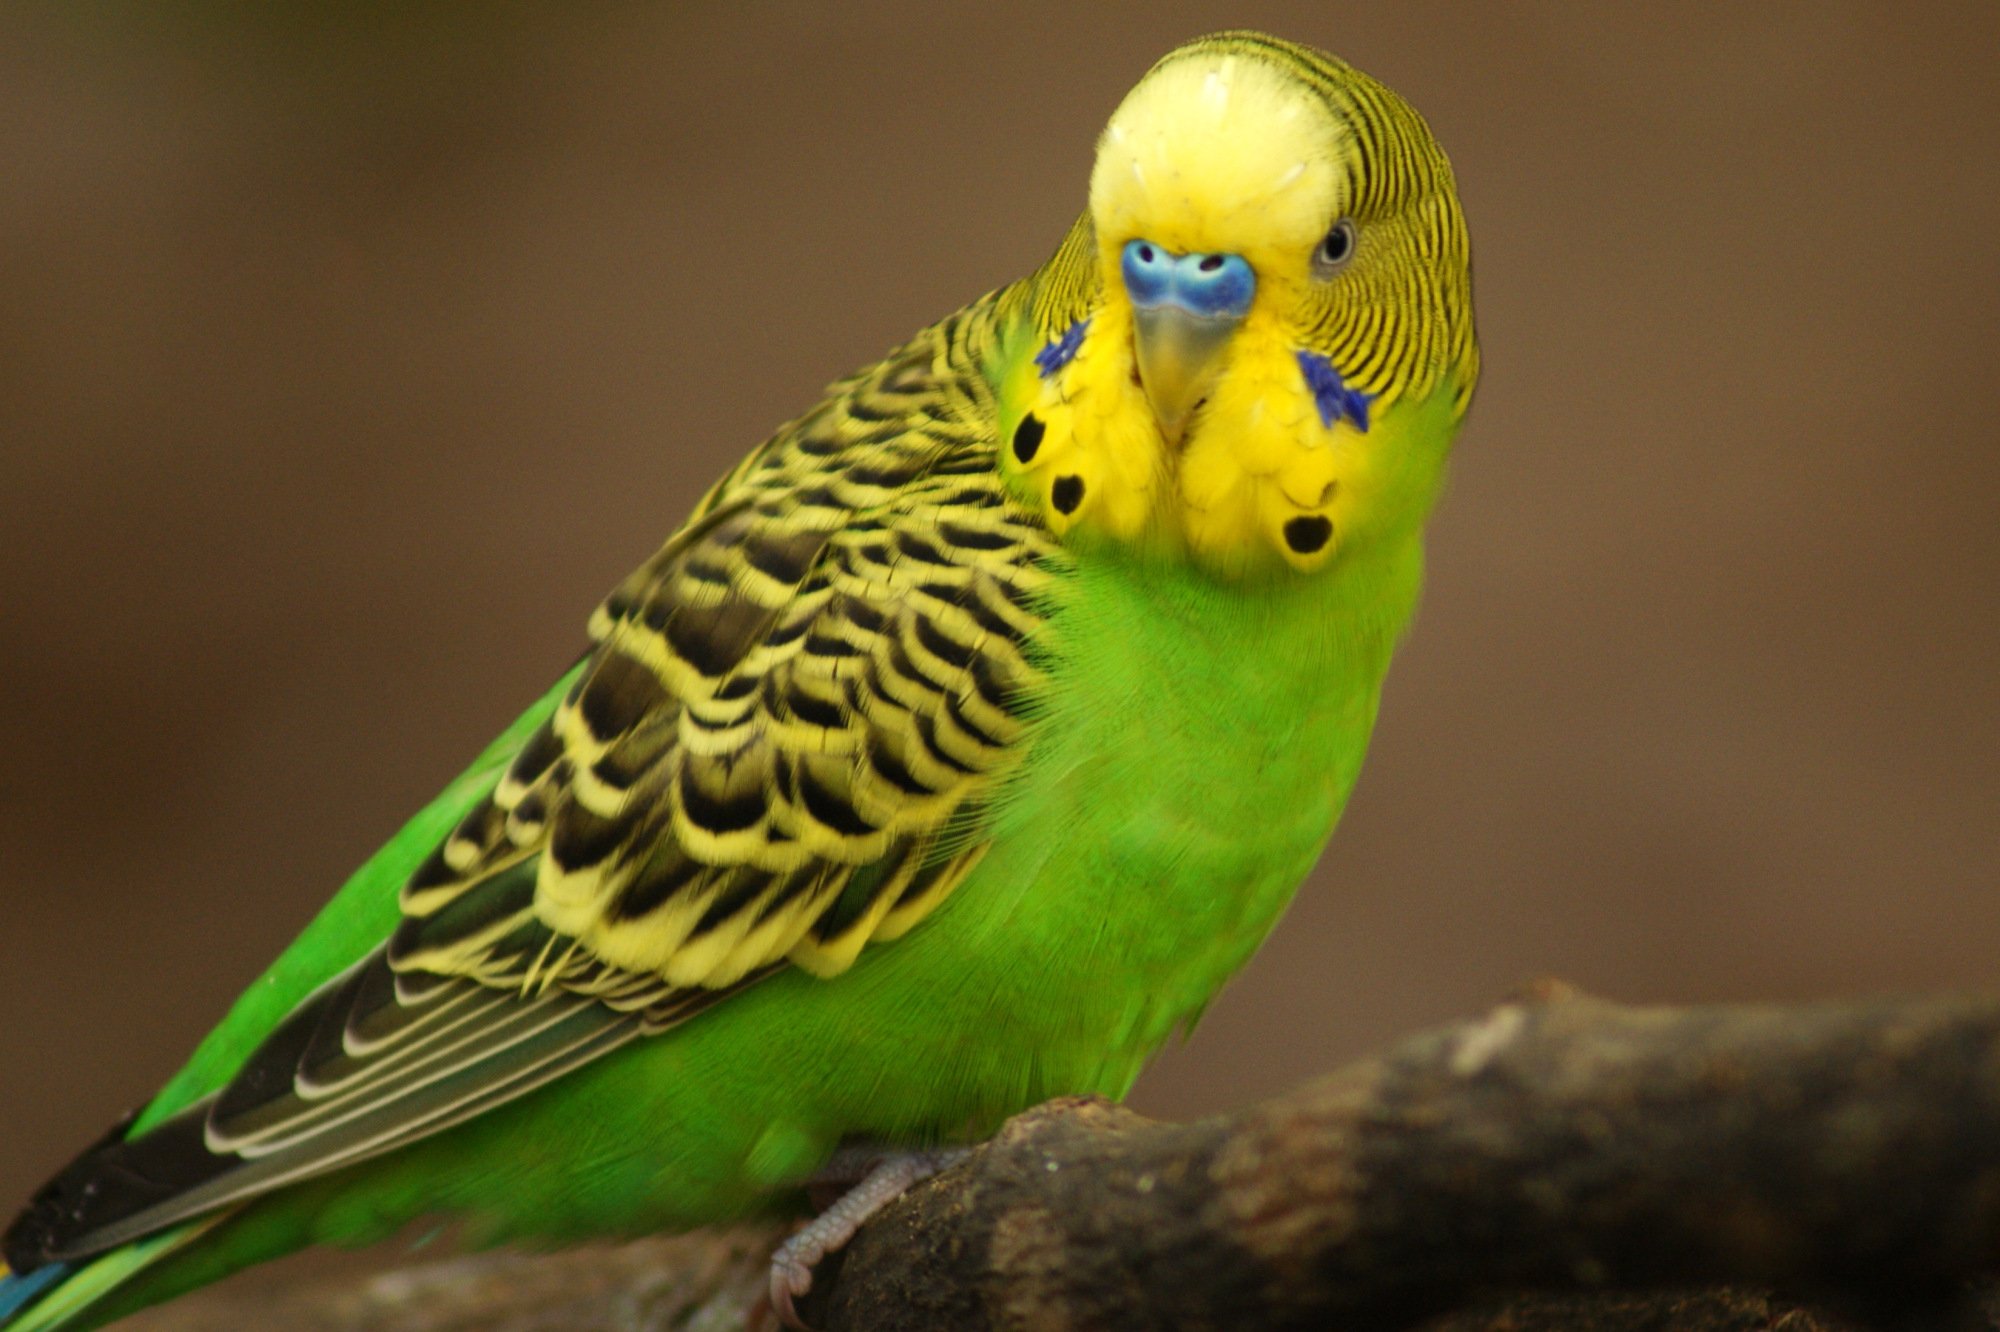 Parakeet budgie parrot bird tropical (58) wallpaper | 2000x1332 ...